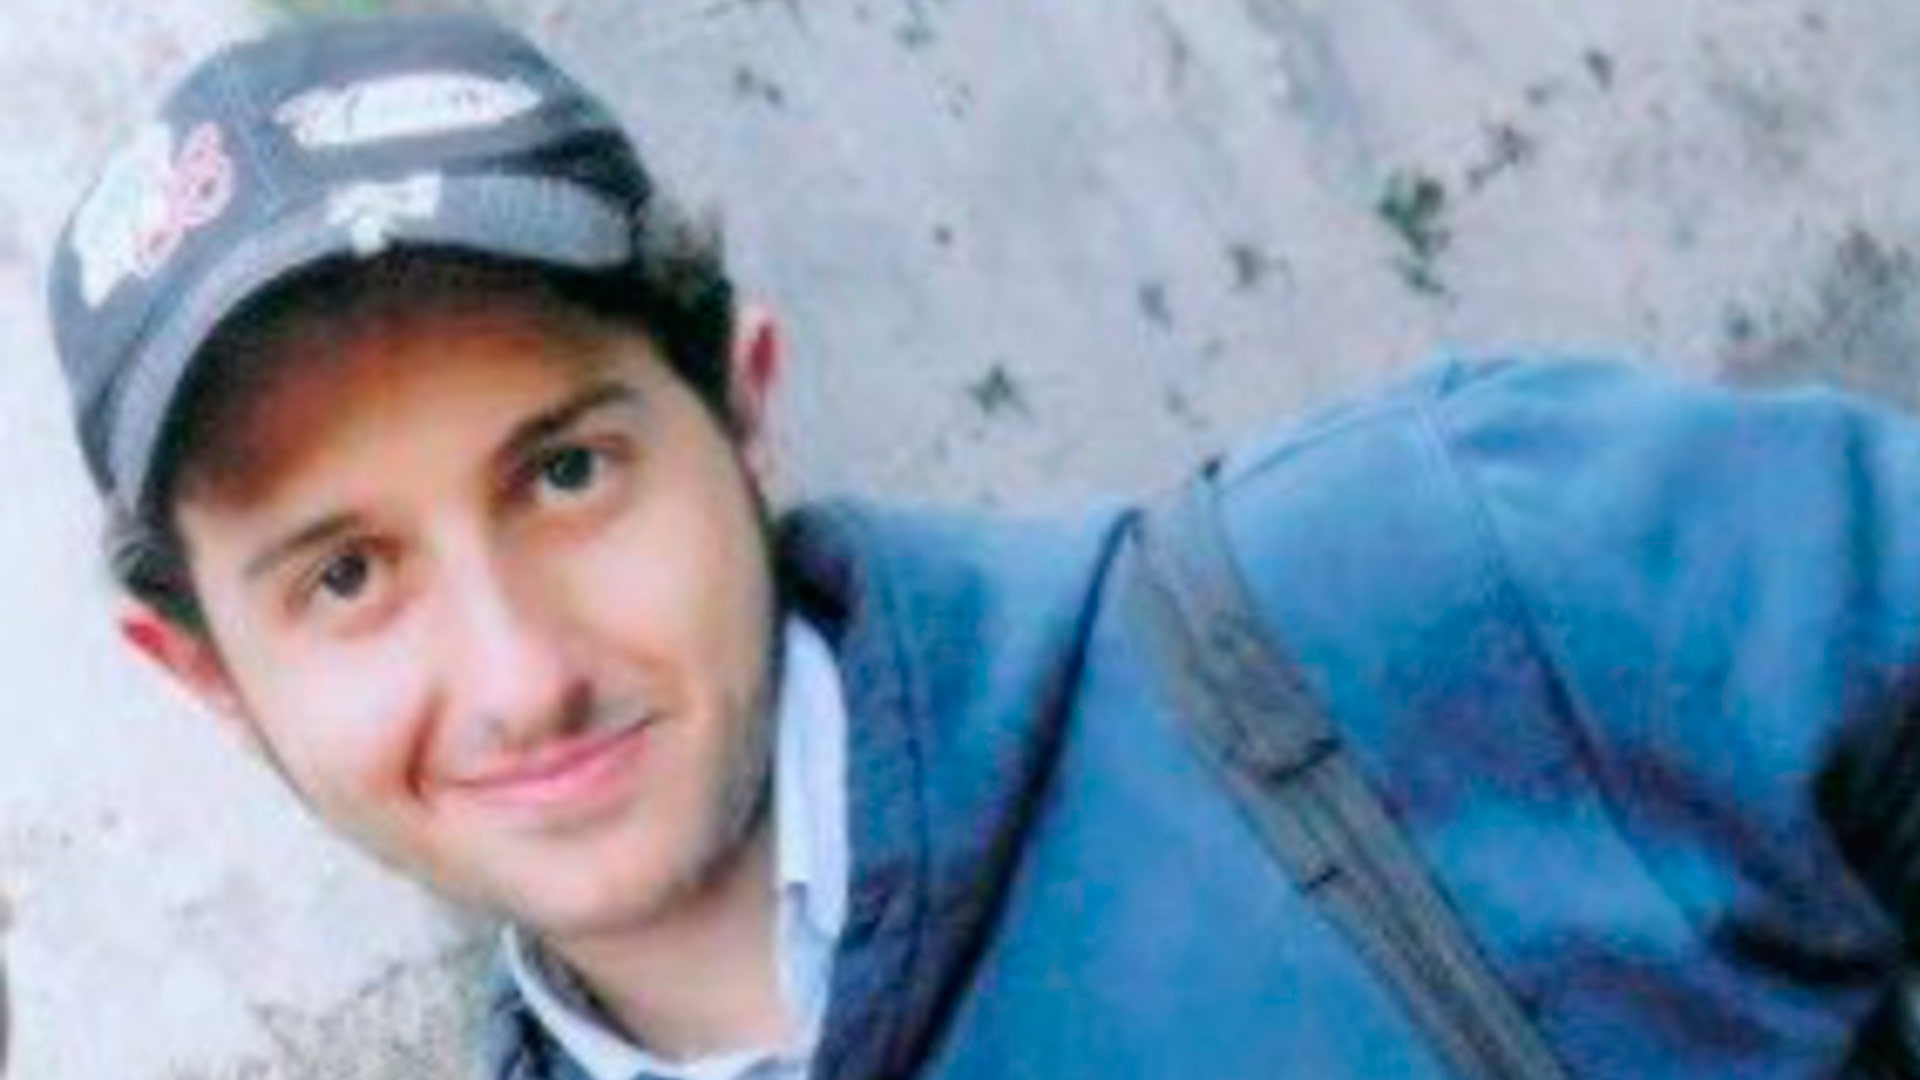 La policía localiza en Madrid a un joven italiano desaparecido en Sicilia hace 5 años